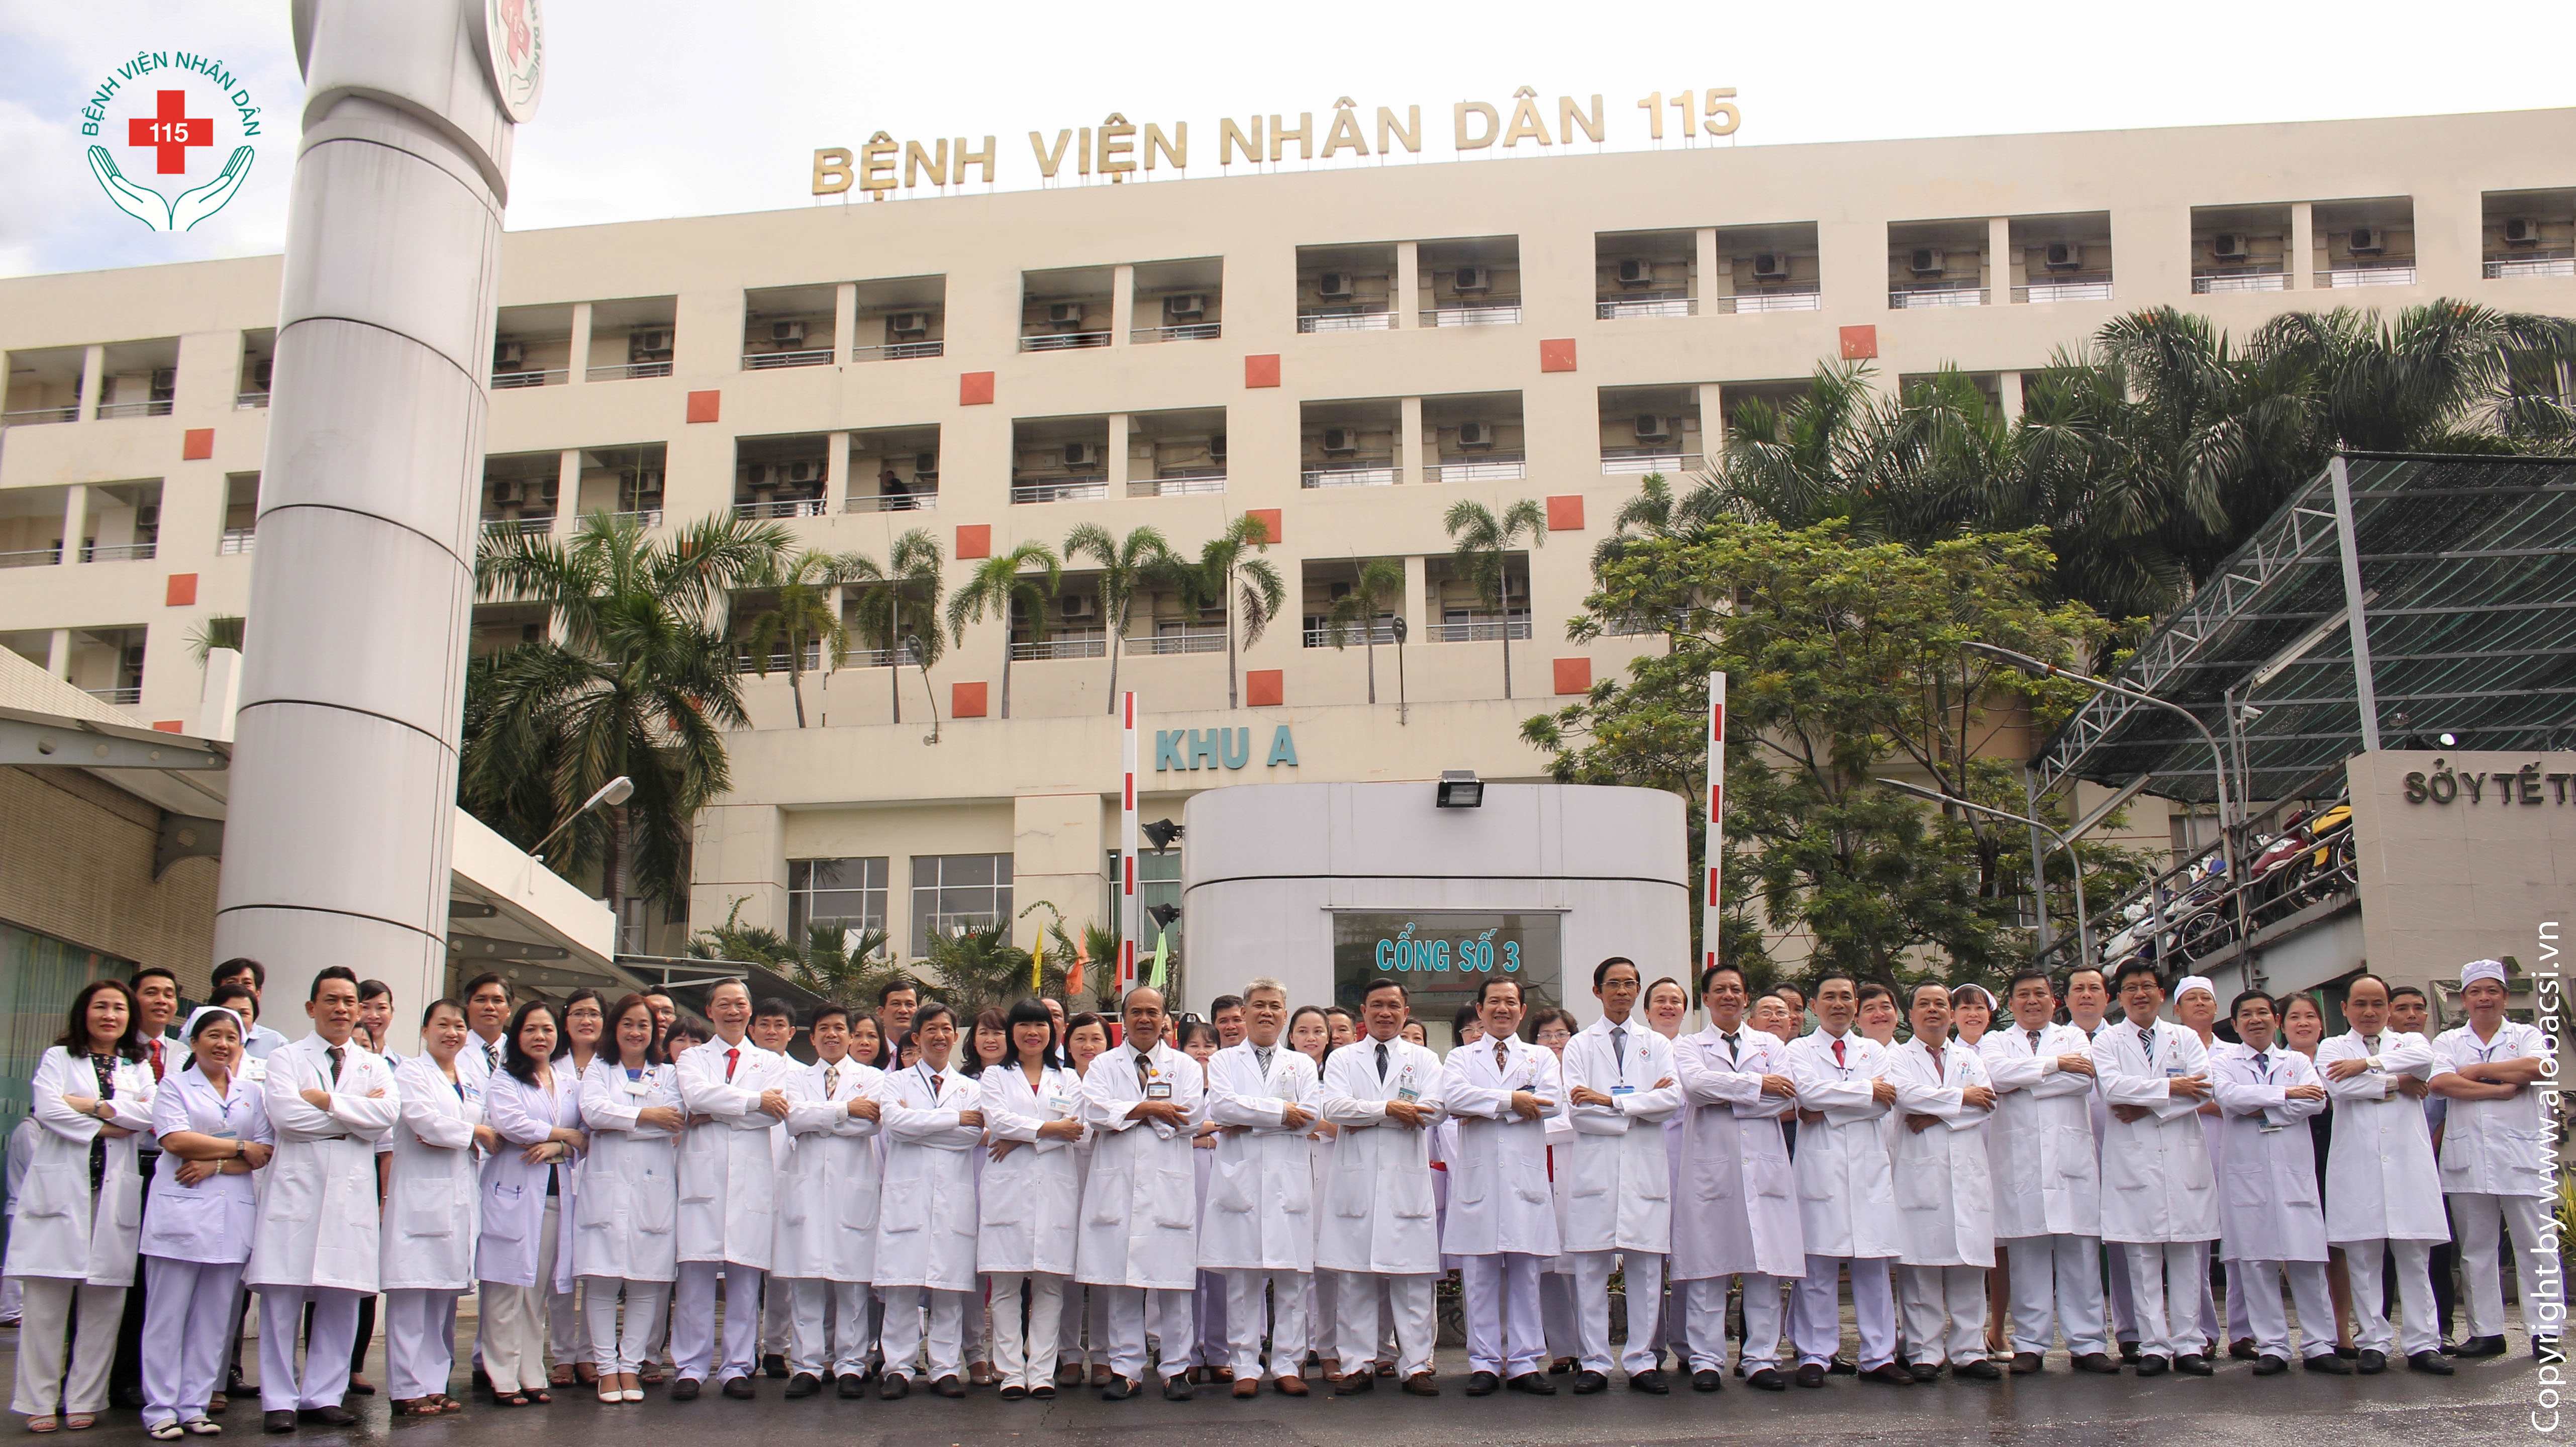 SỨC MẠNH 115 - Bệnh viện Nhân Dân 115